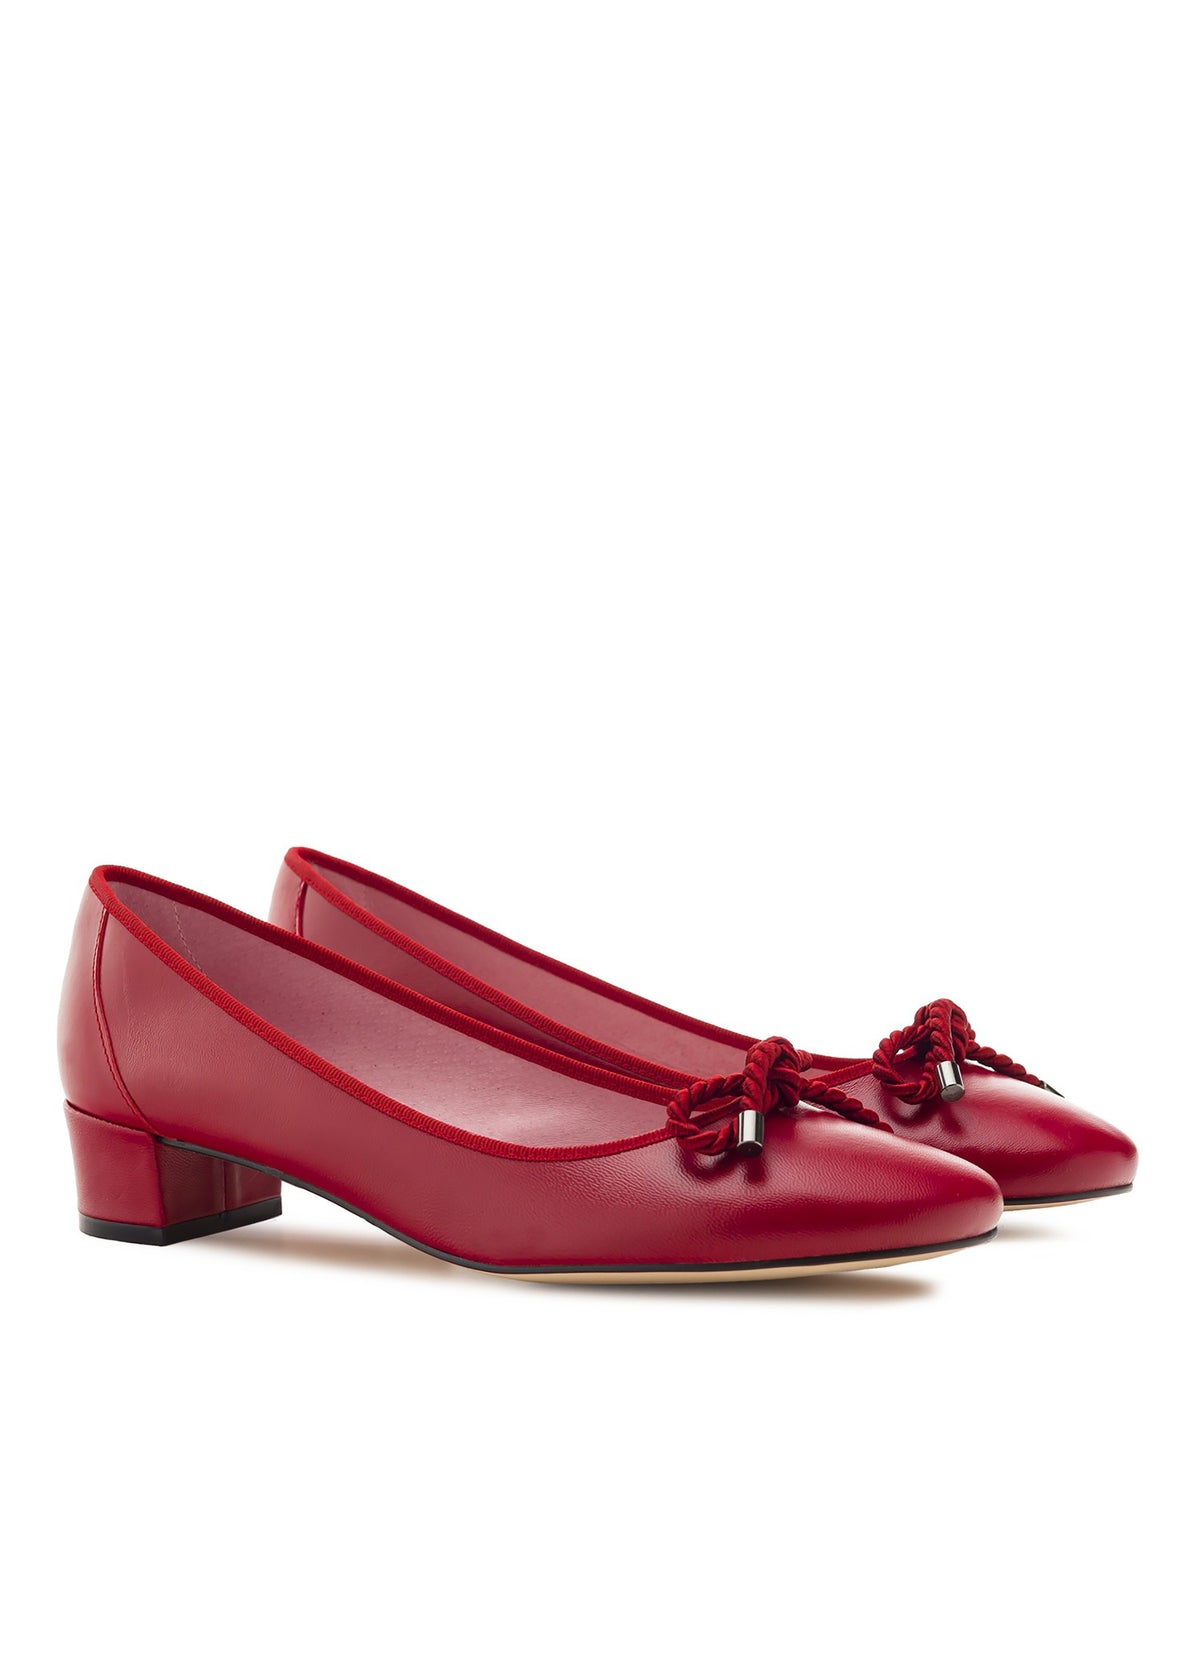 Låga skor med öppen tå med dubbklack - Lucia, rött läder, rosettdekoration